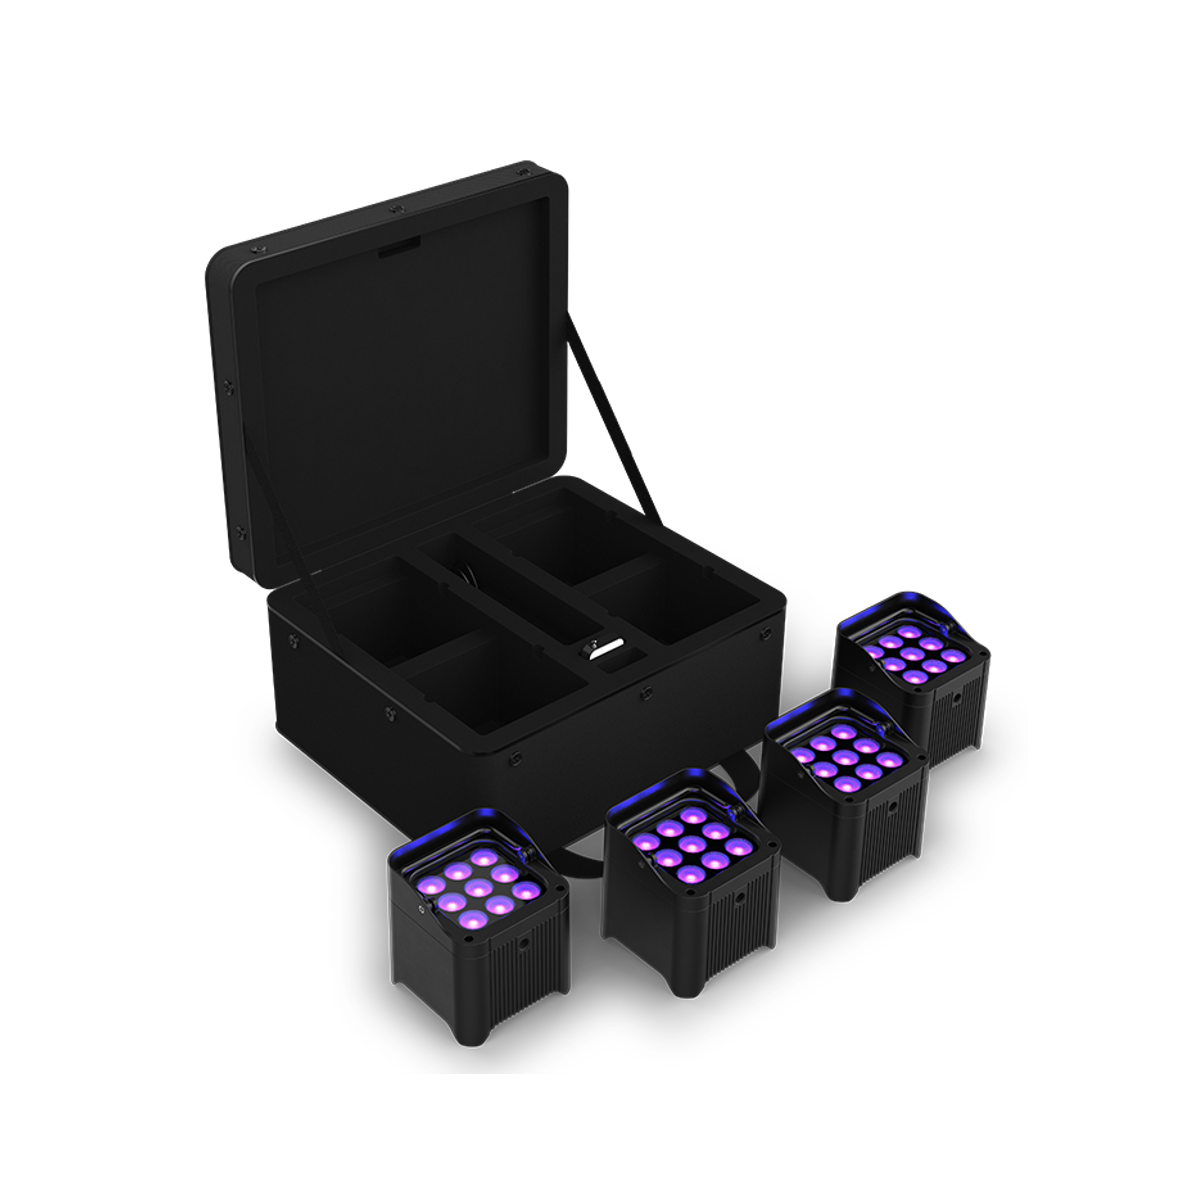 Projecteurs sur batteries - Chauvet DJ - Freedom Par H9 IP X4